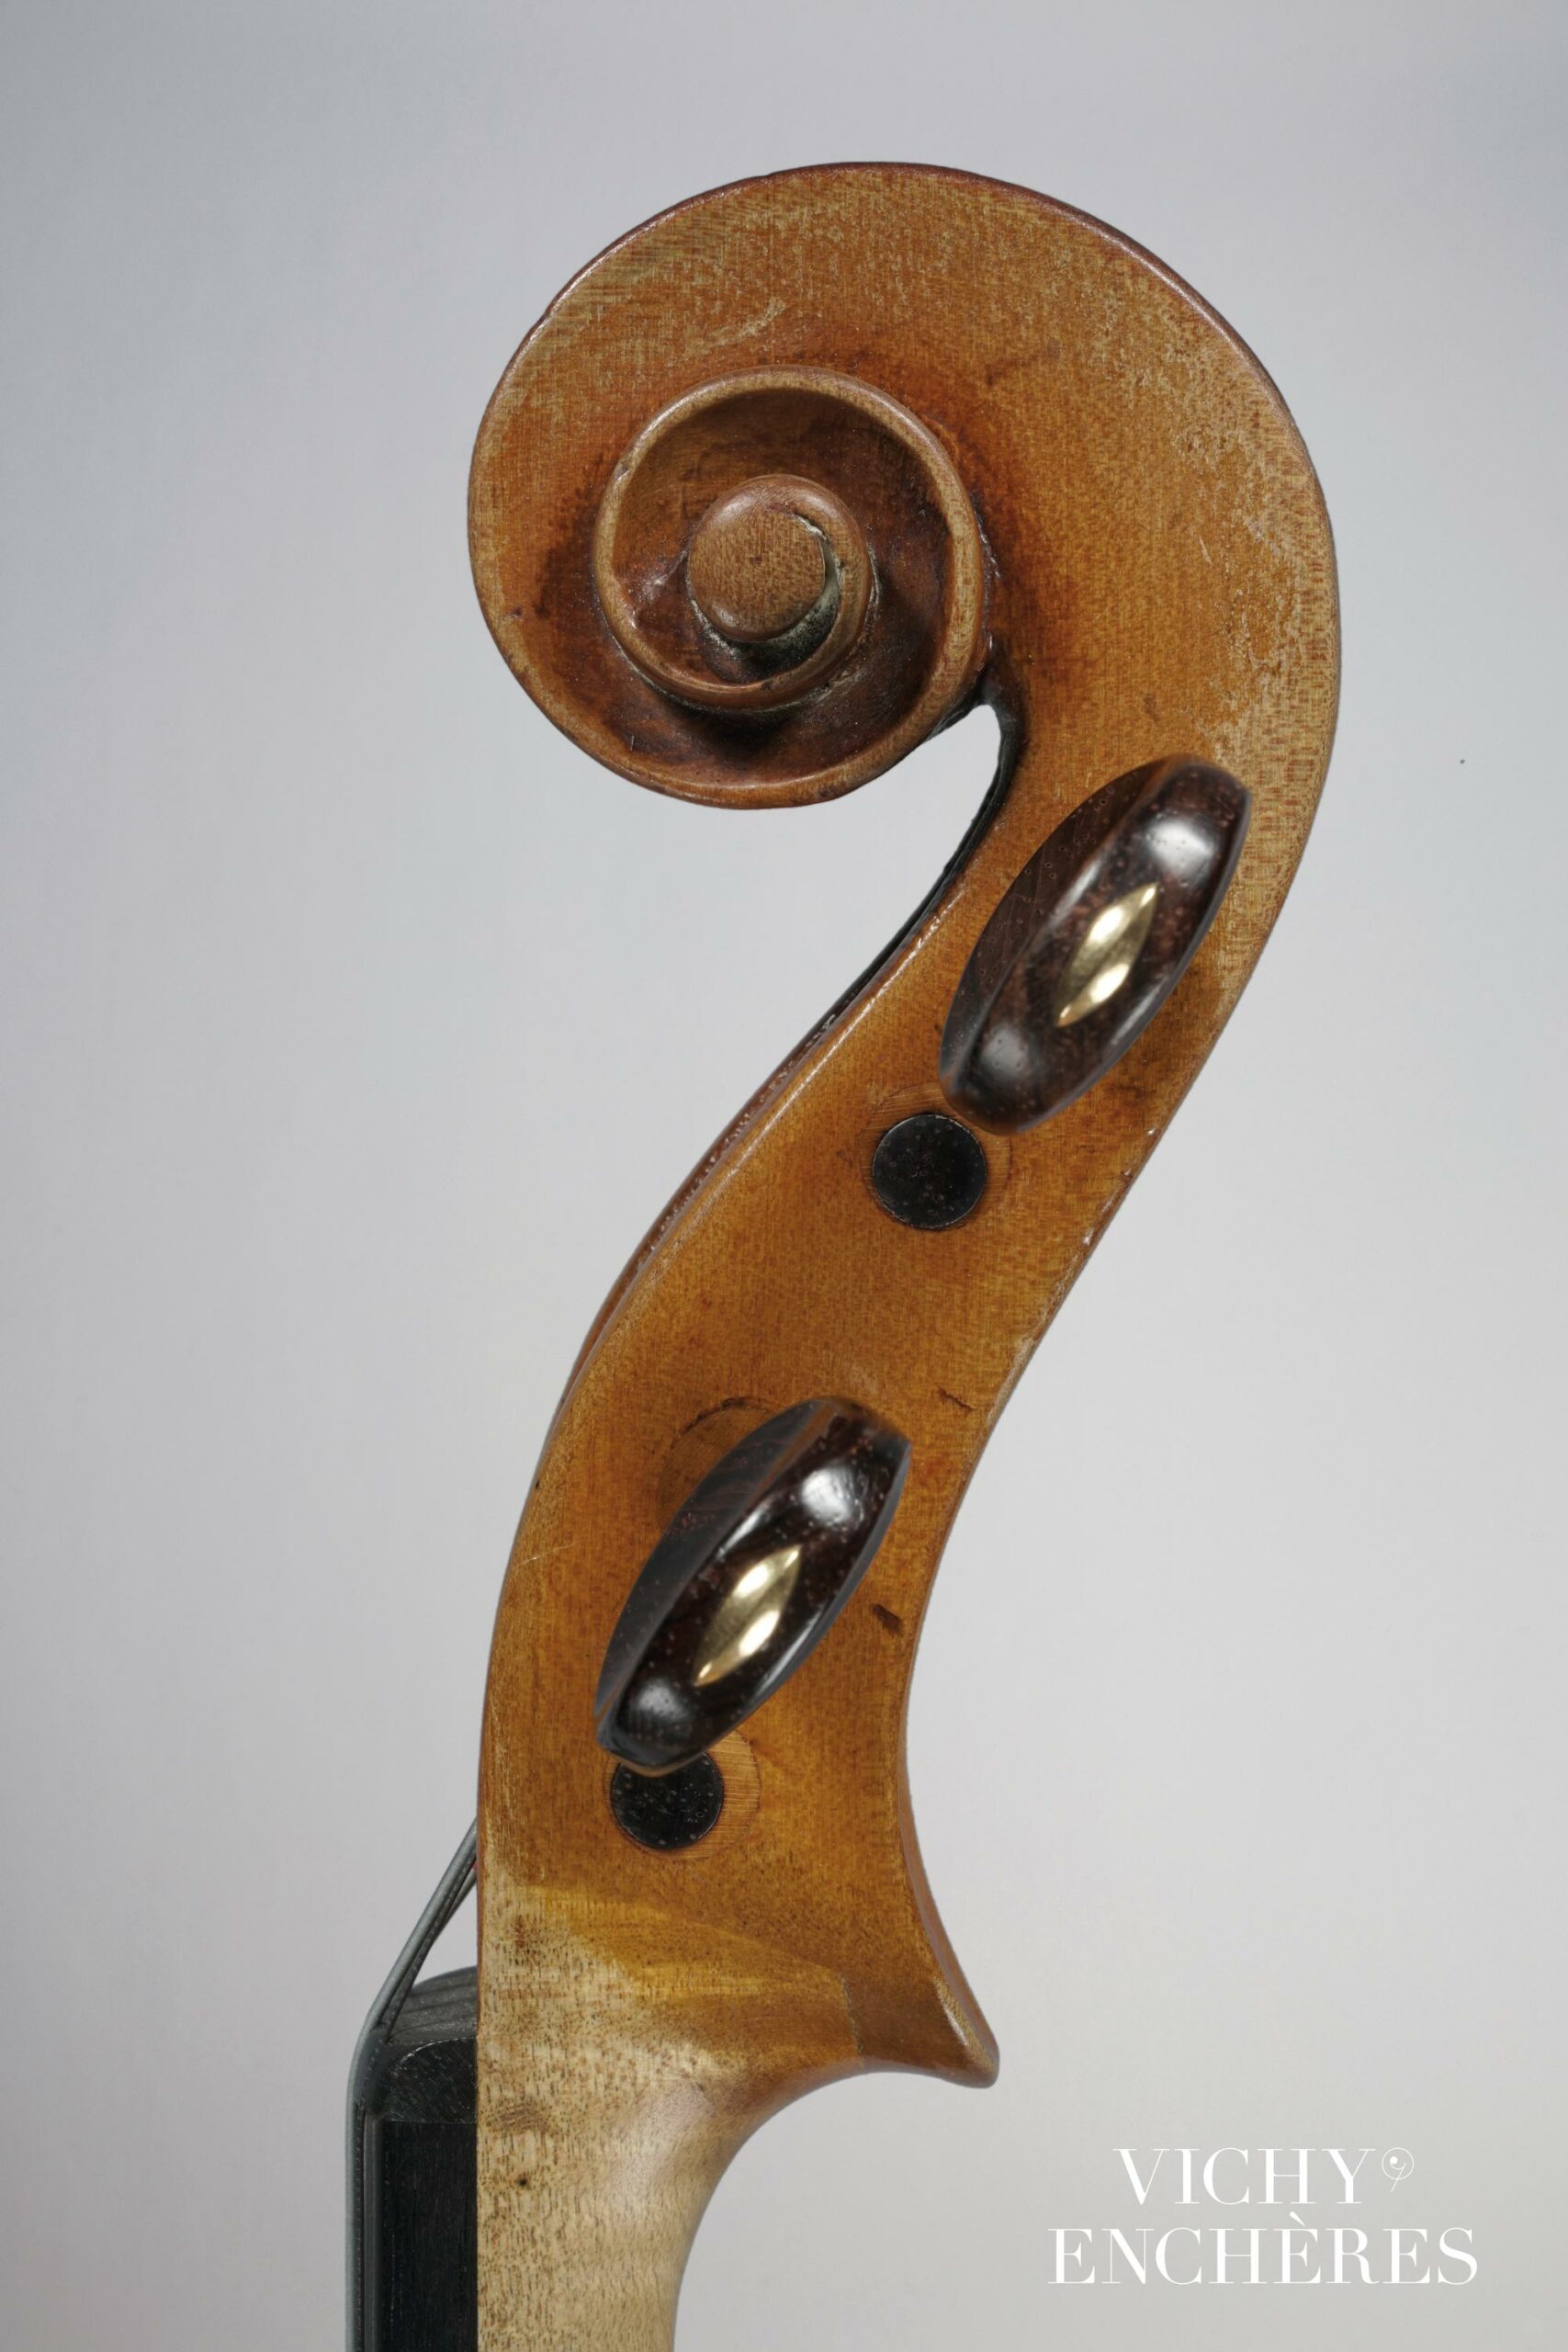 Intéressant et rare alto de Luigi MARCONCINI Instrument mis en vente par Vichy Enchères le 1 juin 2023 © C. Darbelet